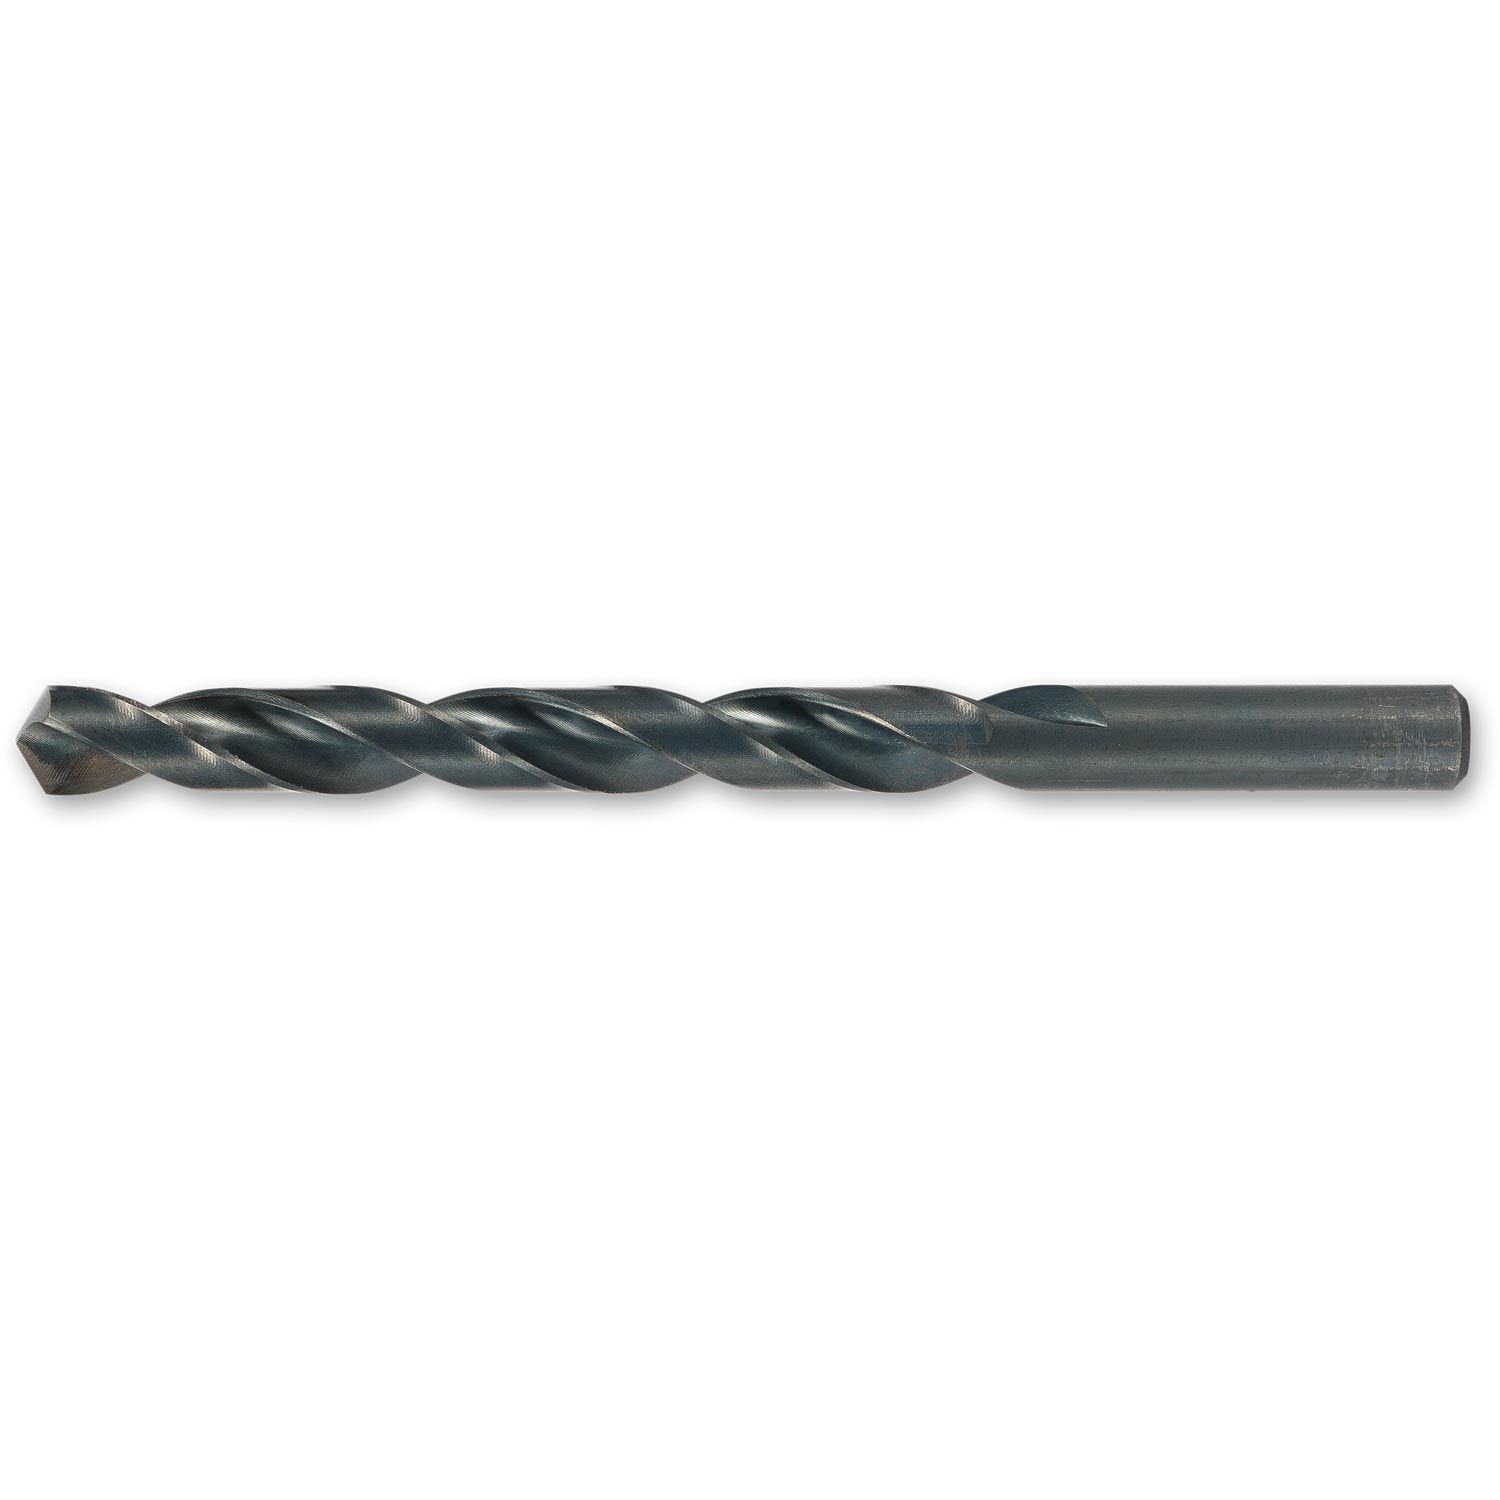 10 x 2.0mm Ground HSS Drill Bits Metric High Speed Steel Jobber Twist Drills 2mm